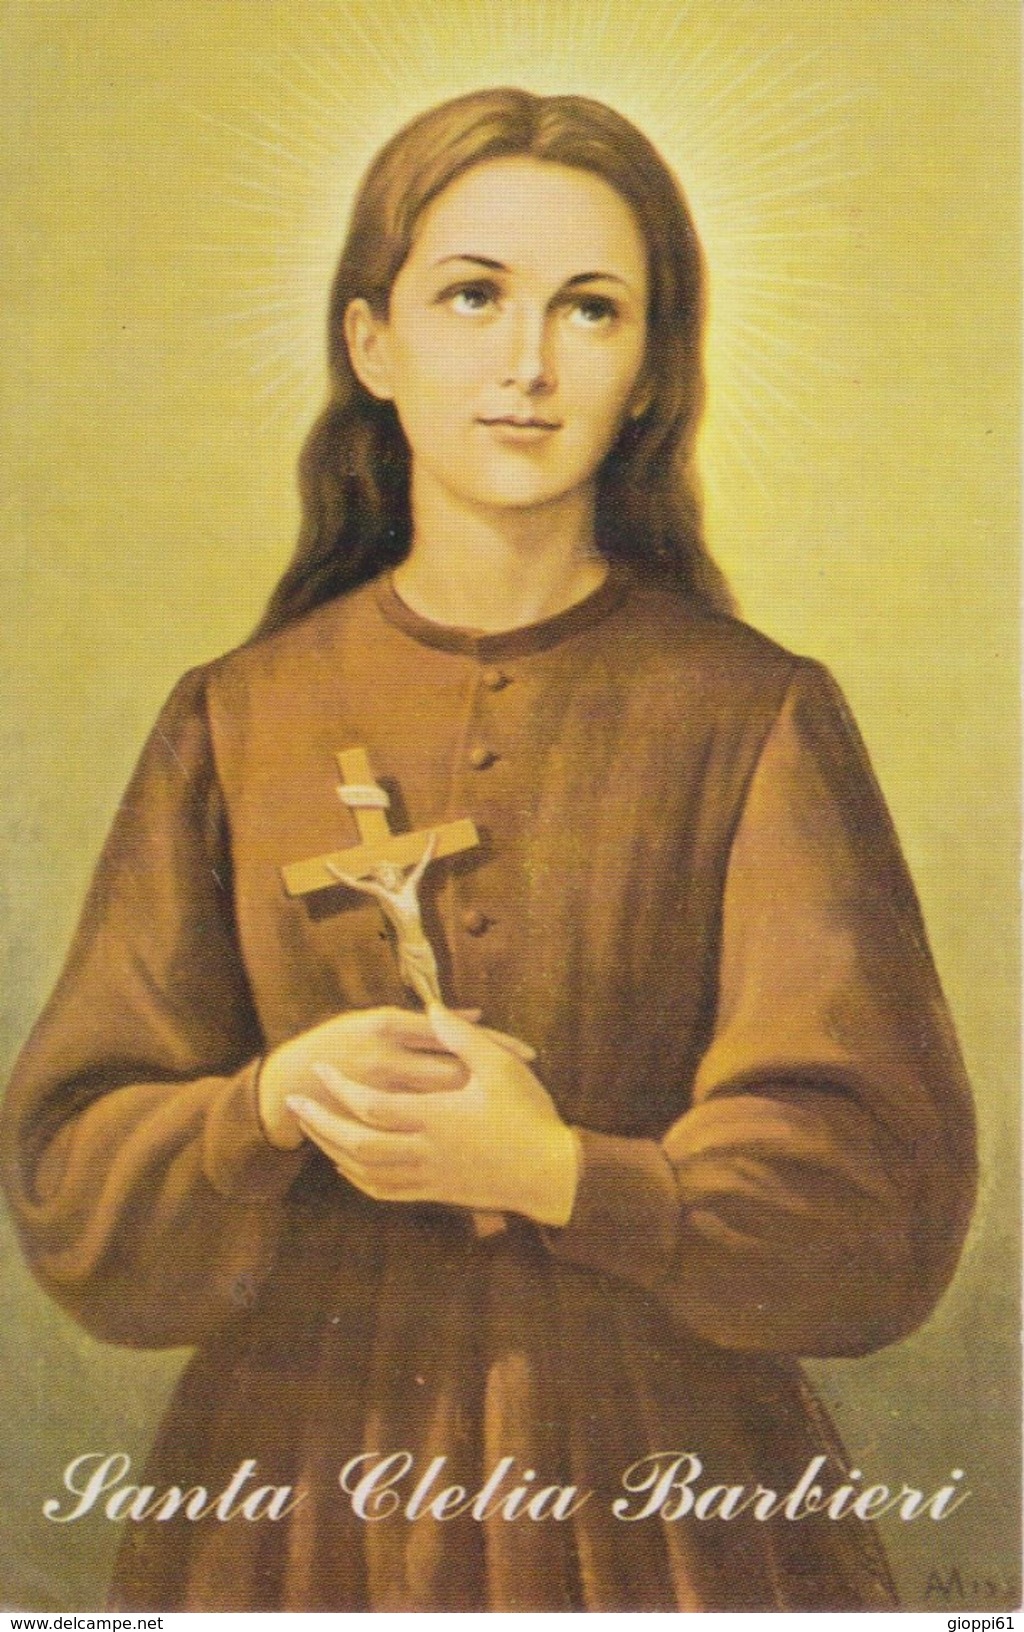 Santa Clelia Barbieri - Imágenes Religiosas